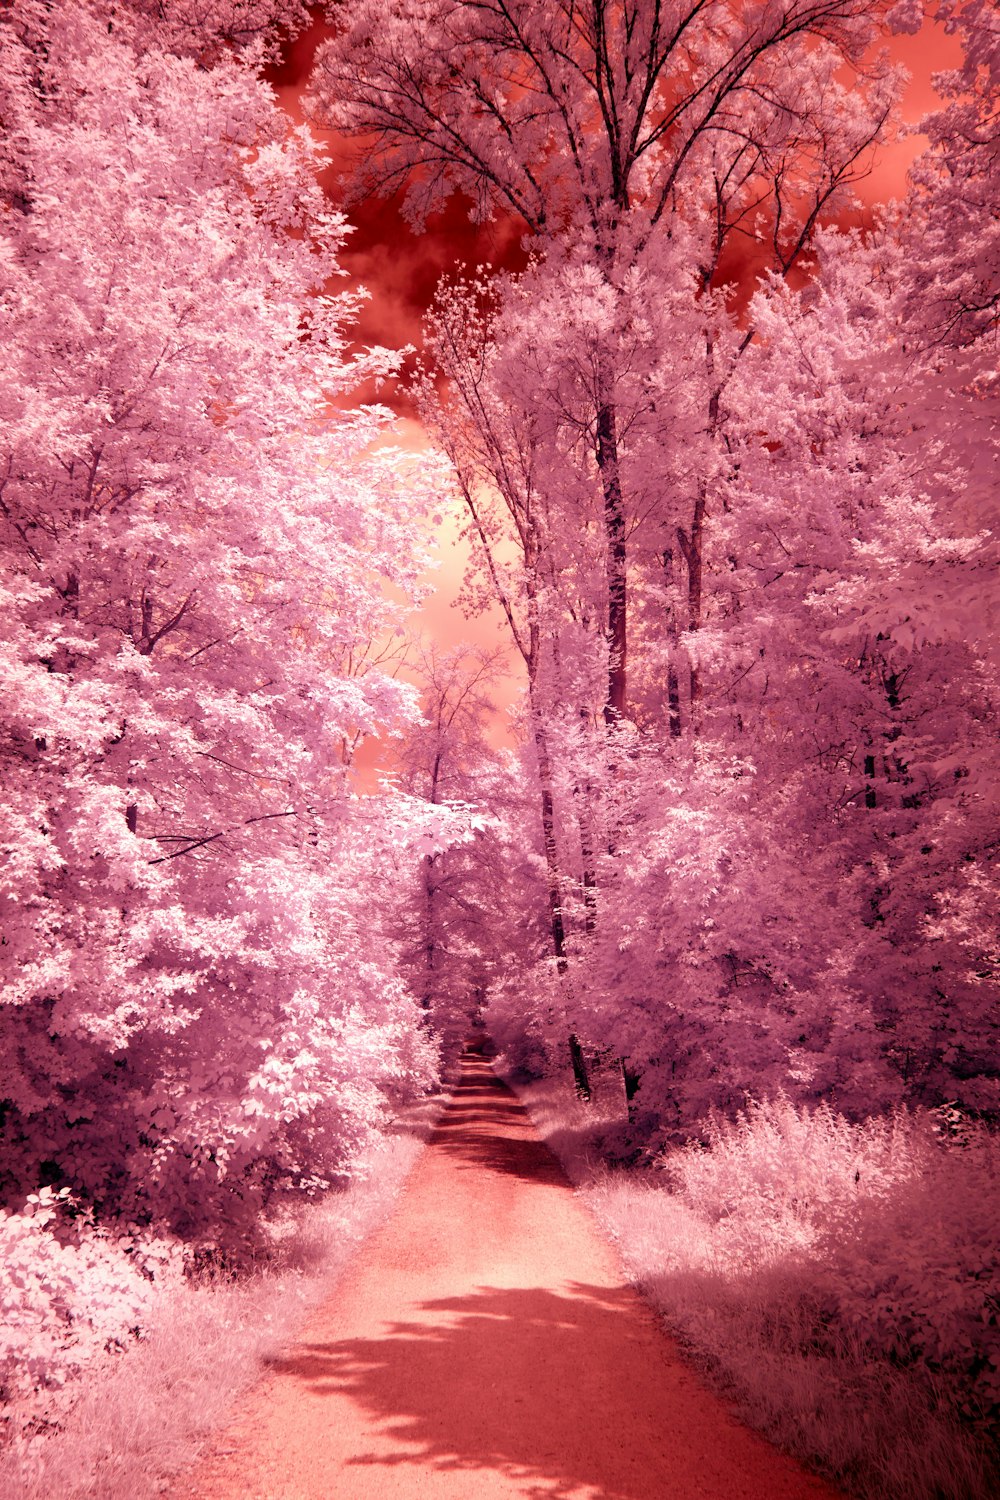 un chemin de terre rouge entouré d’arbres roses